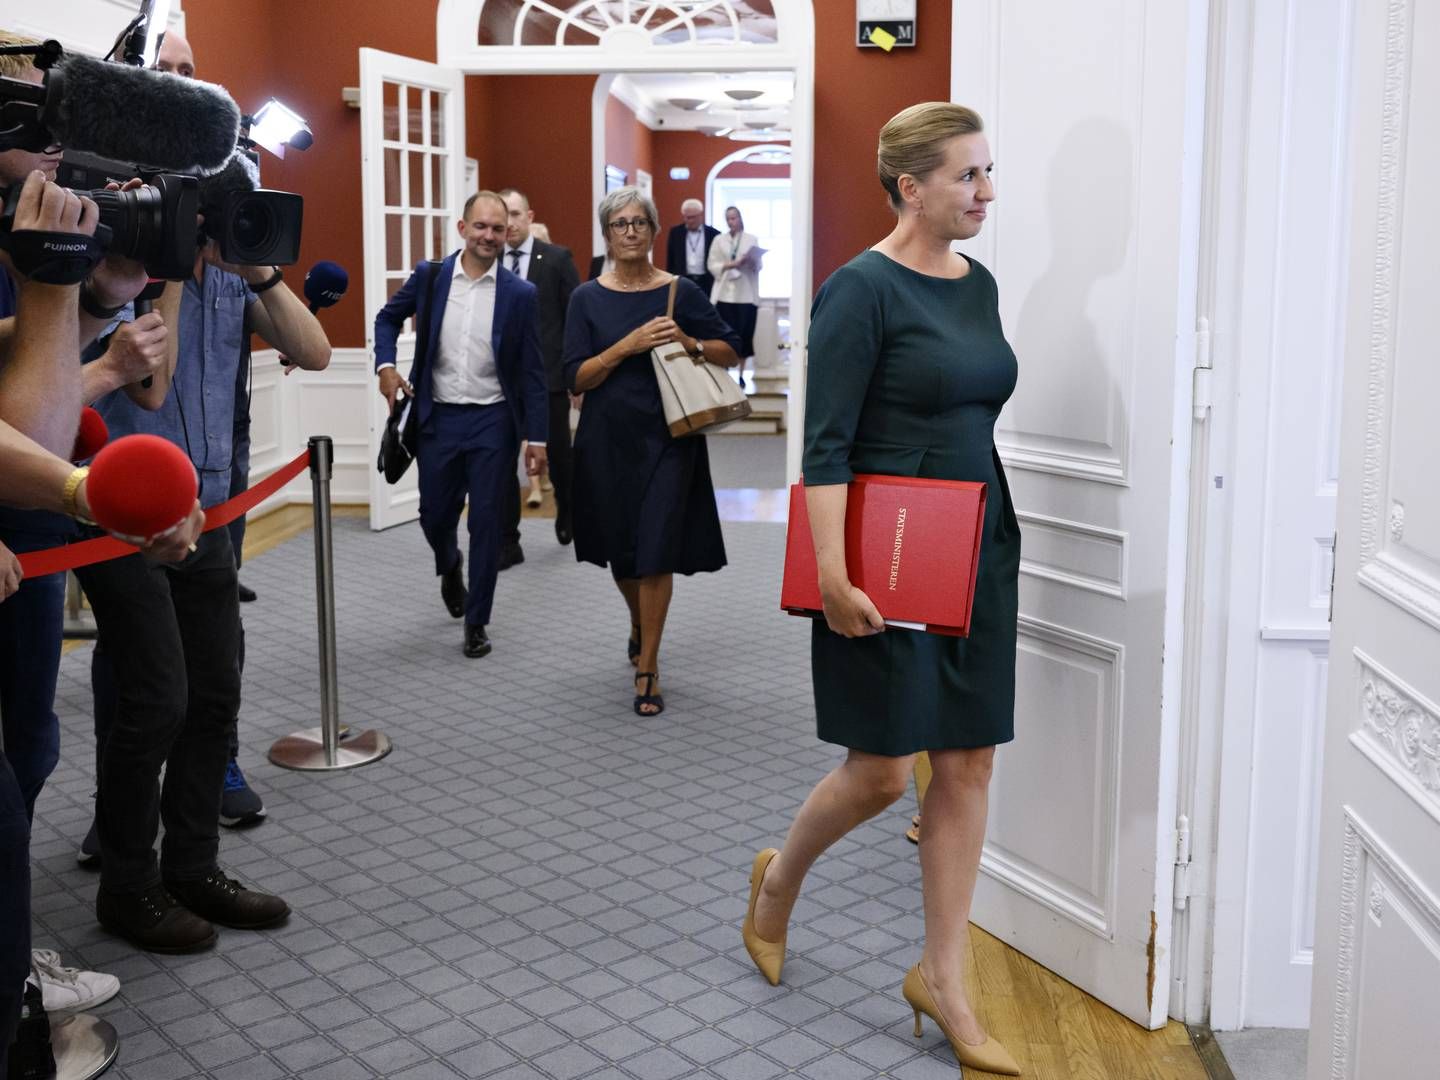 Statsminister Mette Frederiksen (S) ankommer til møde i Granskningsudvalget på Christiansborg i København. | Foto: Philip Davali